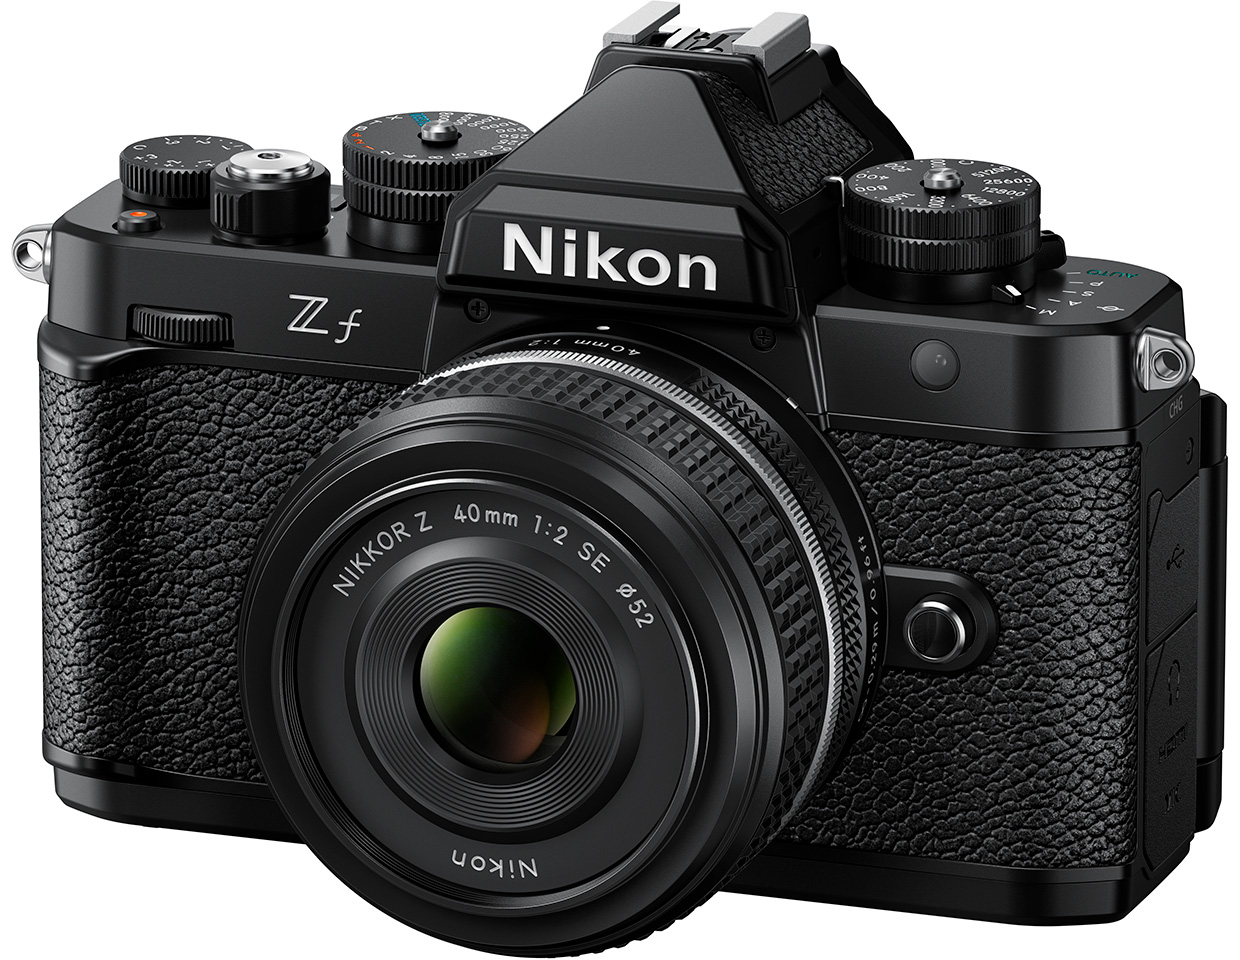 フルサイズミラーレスカメラ「ニコン Z f」を発売 | ニュース | Nikon